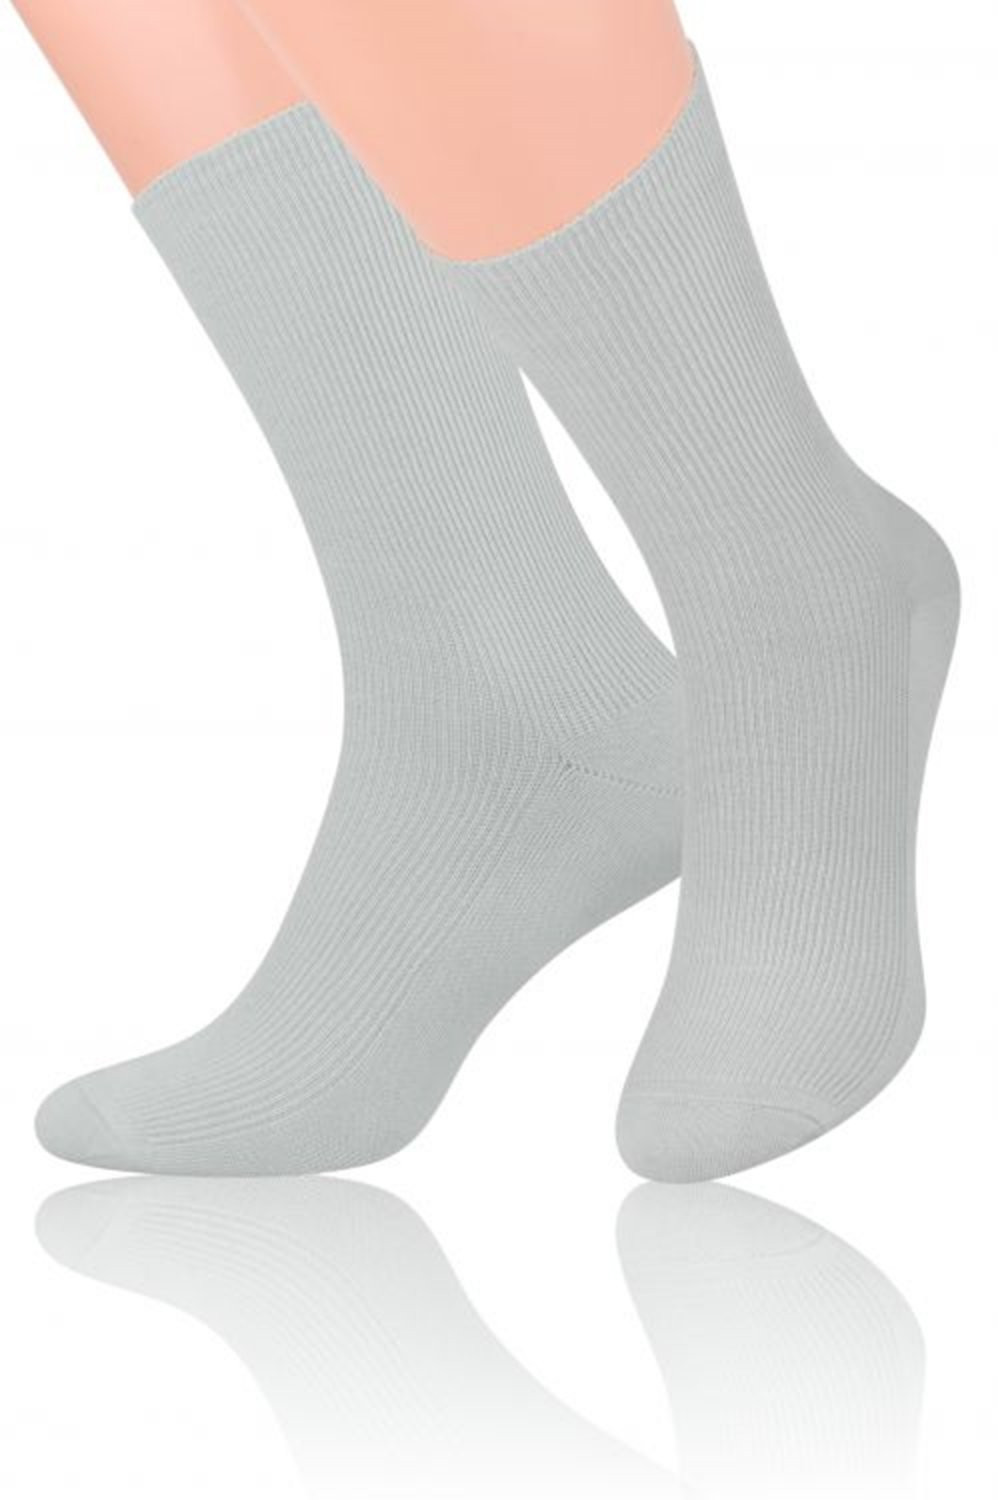 Pánské ponožky 018 light grey - Steven šedá 39/42